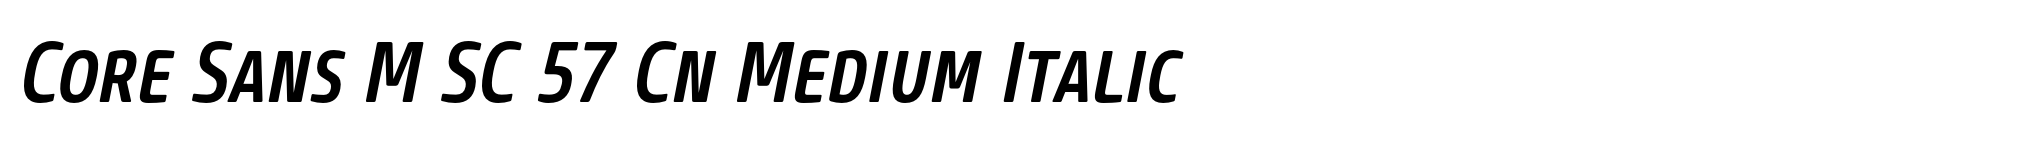 Core Sans M SC 57 Cn Medium Italic image